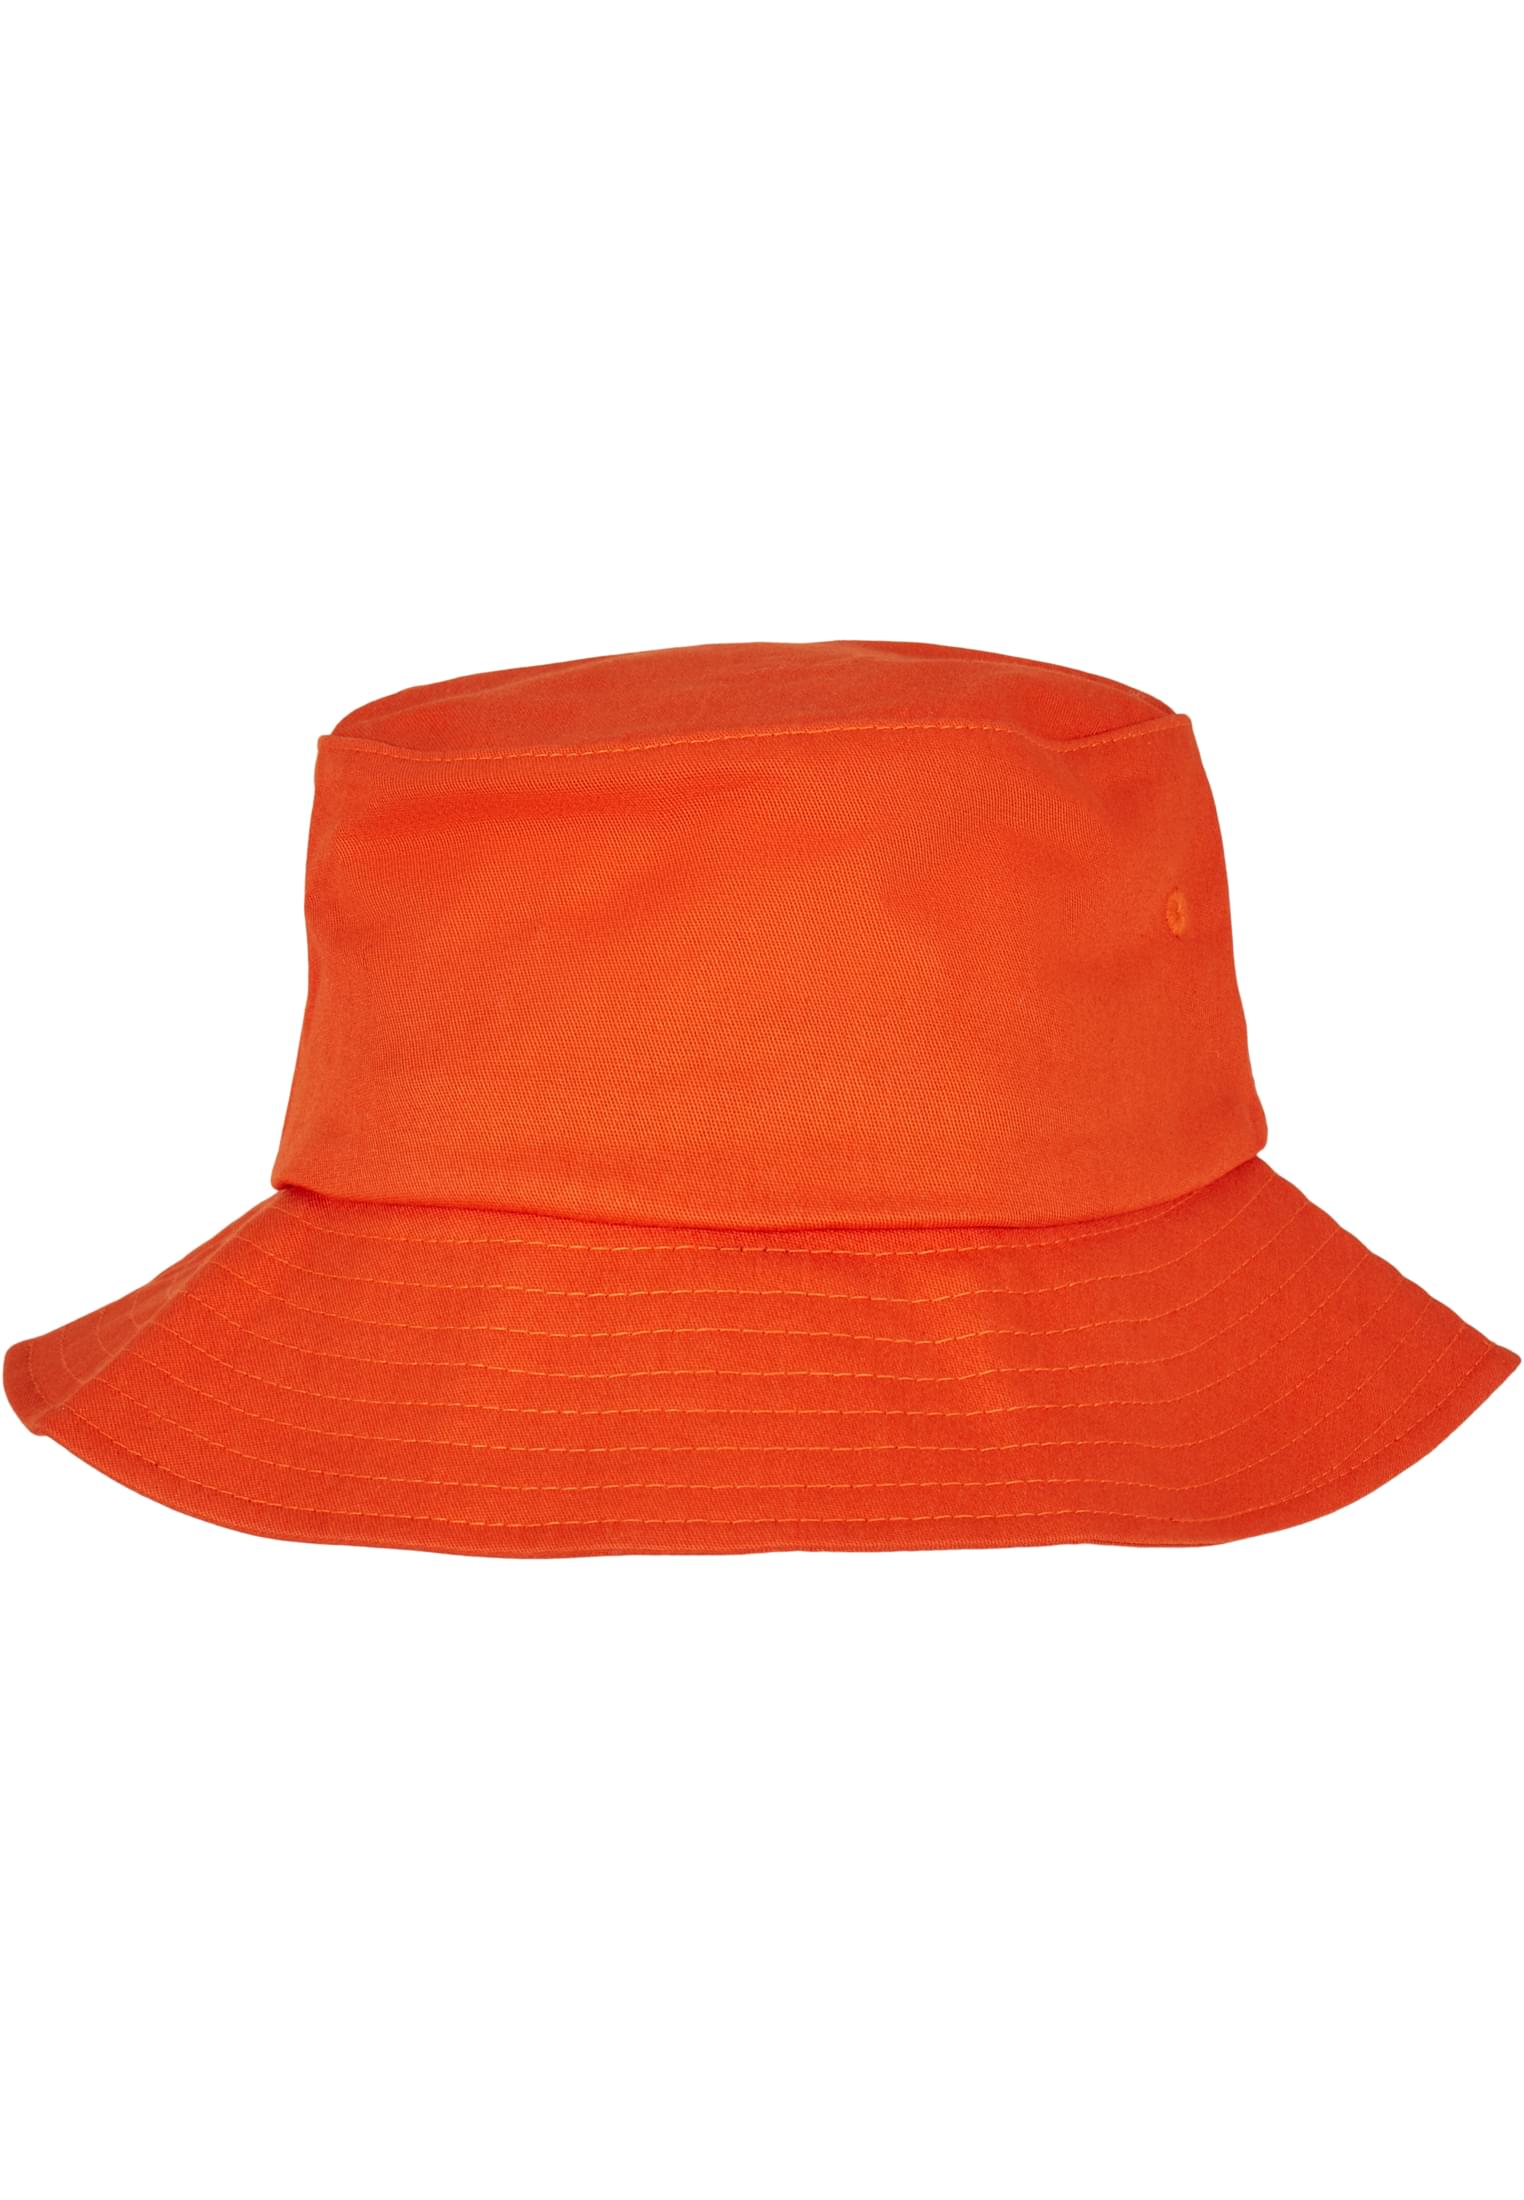 Hat-5003 Bucket Cotton Twill Flexfit